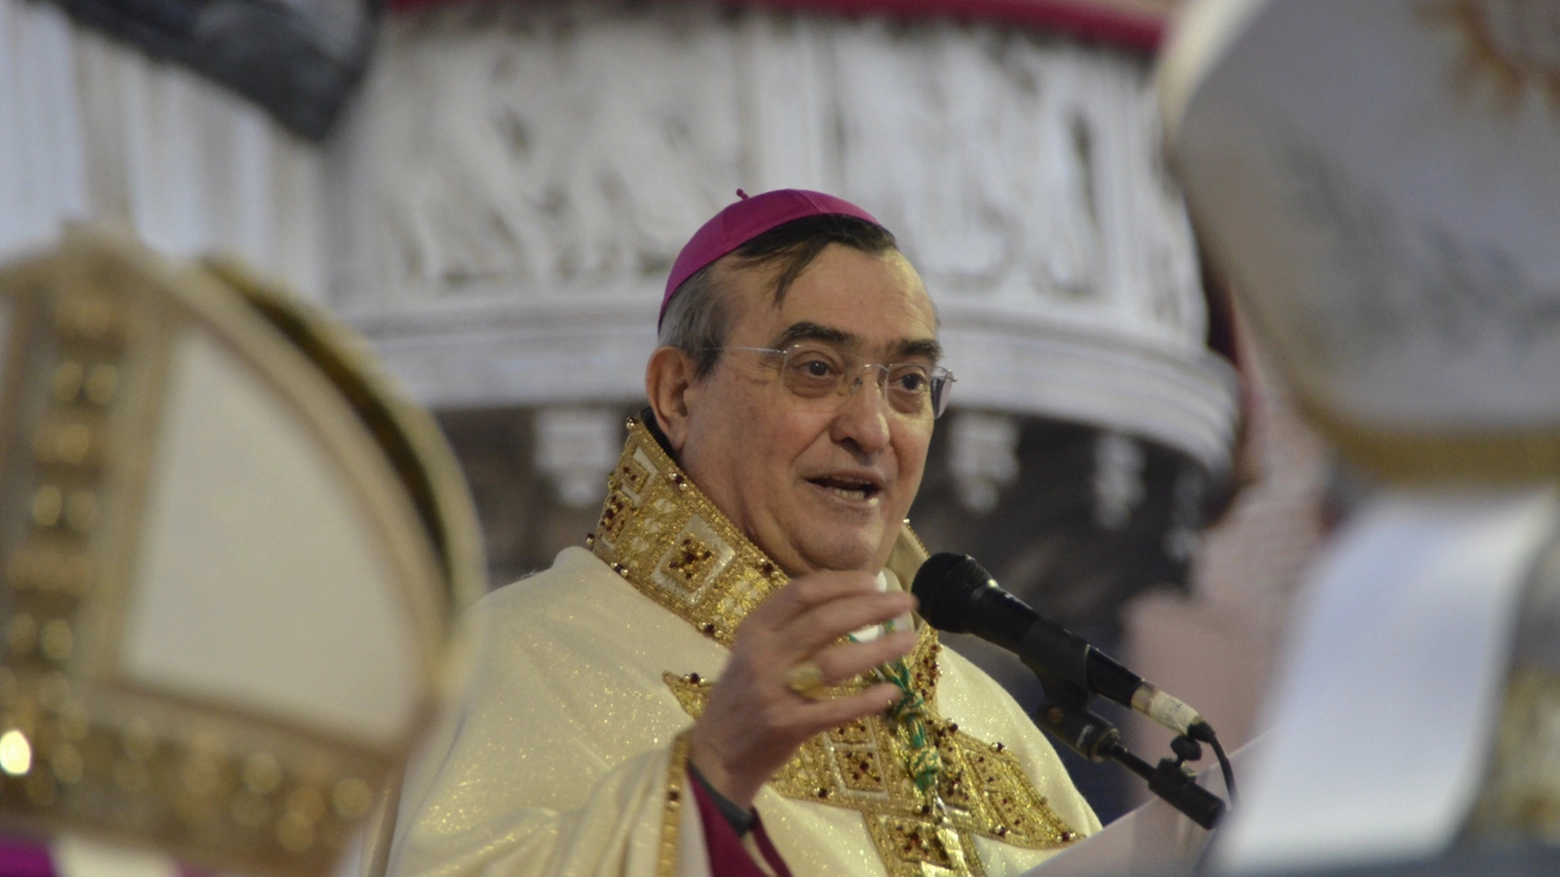 Il vescovo di Prato, Franco Agostinelli (foto Attalmi)